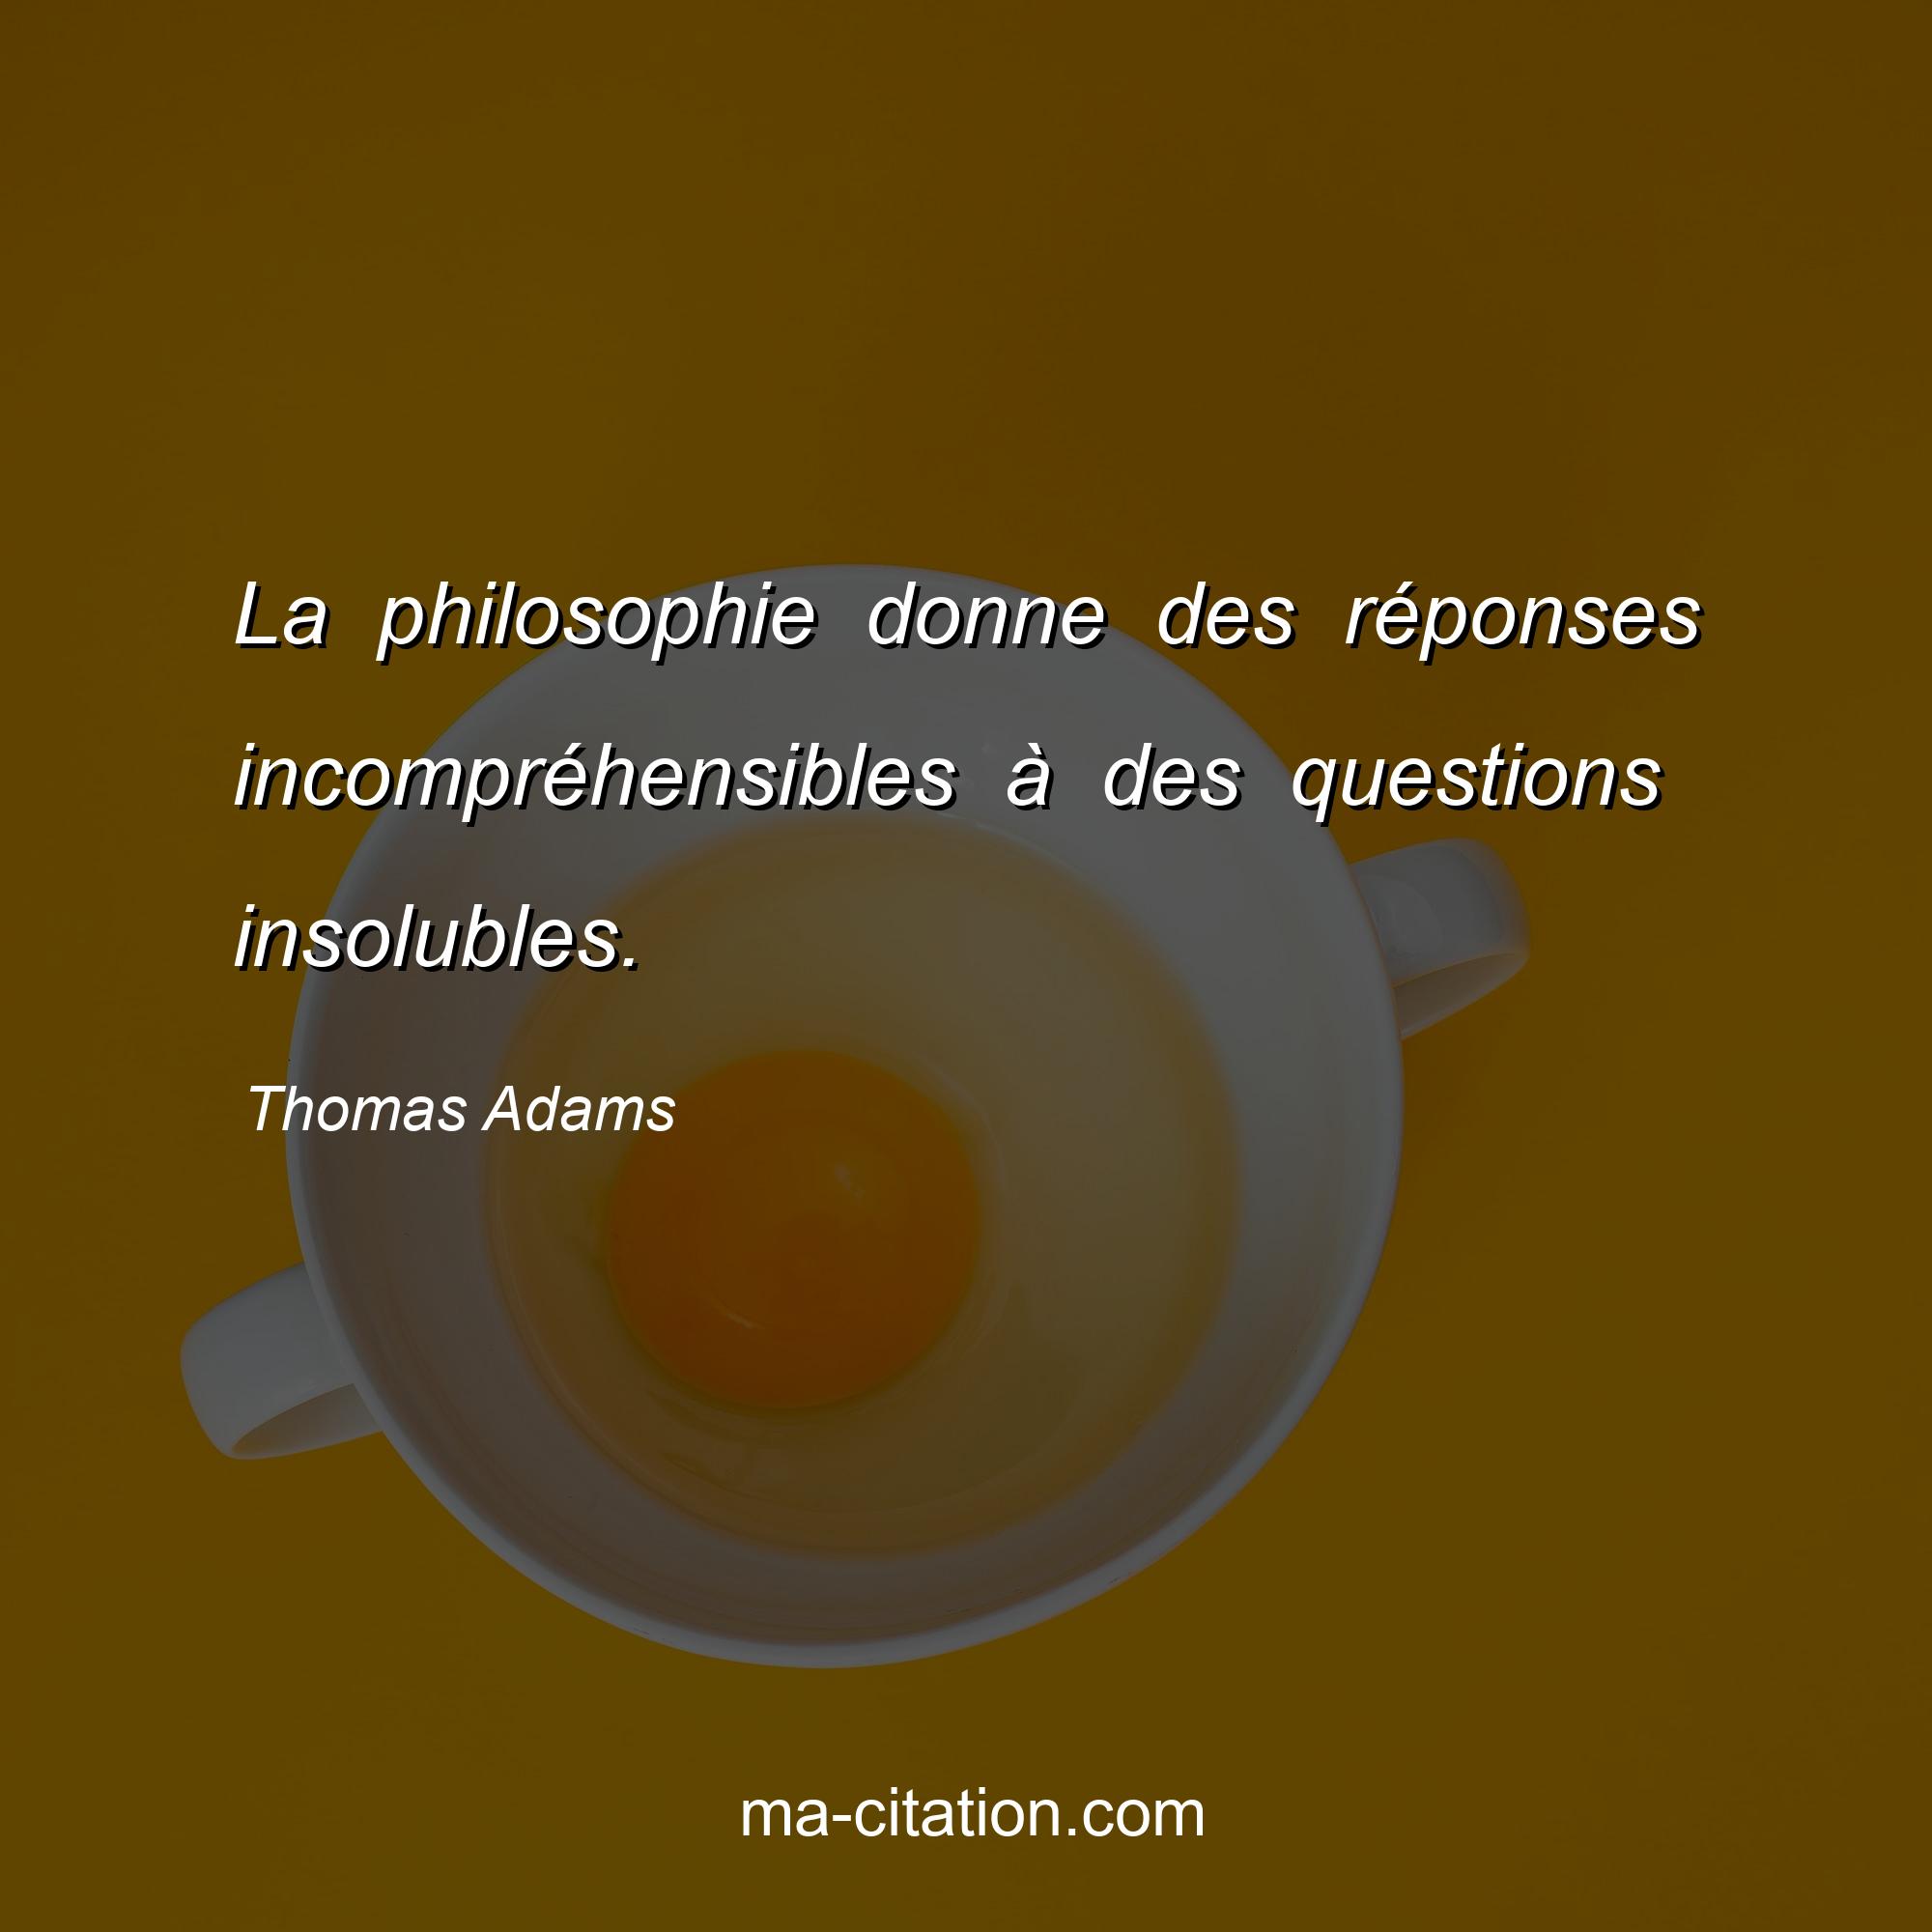 Thomas Adams : La philosophie donne des réponses incompréhensibles à des questions insolubles.